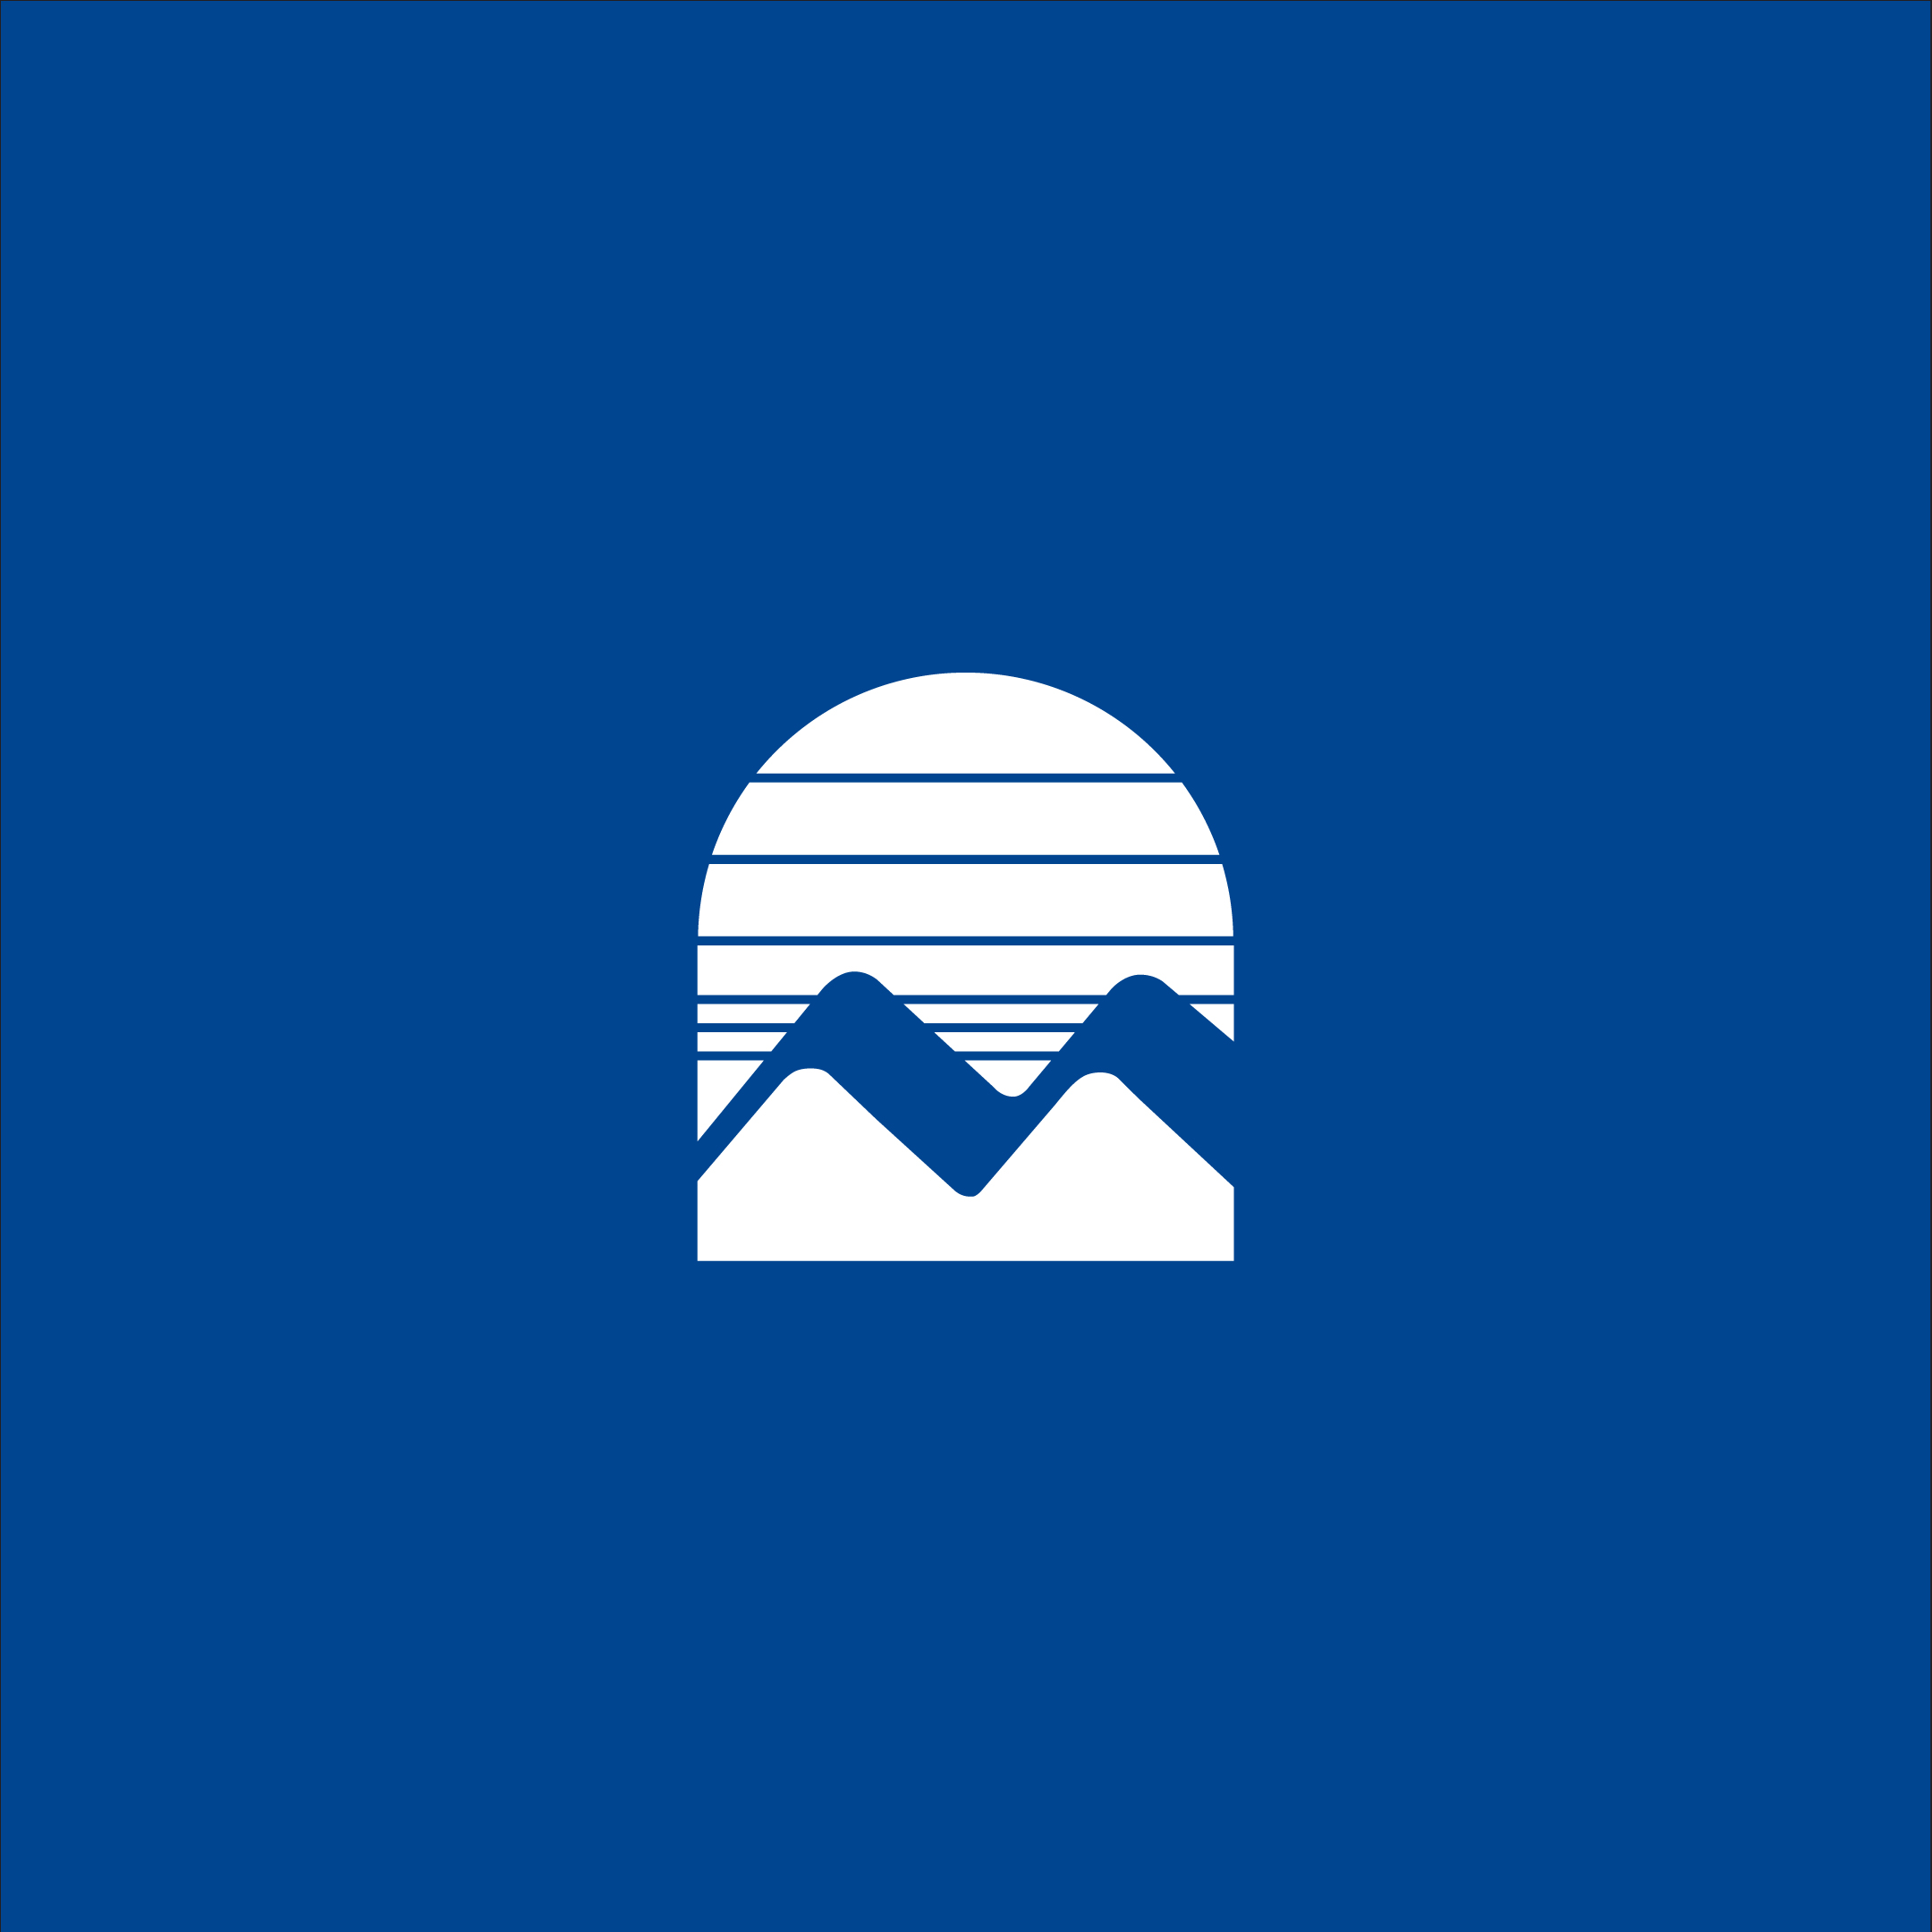 LAMC Logo Background Blue